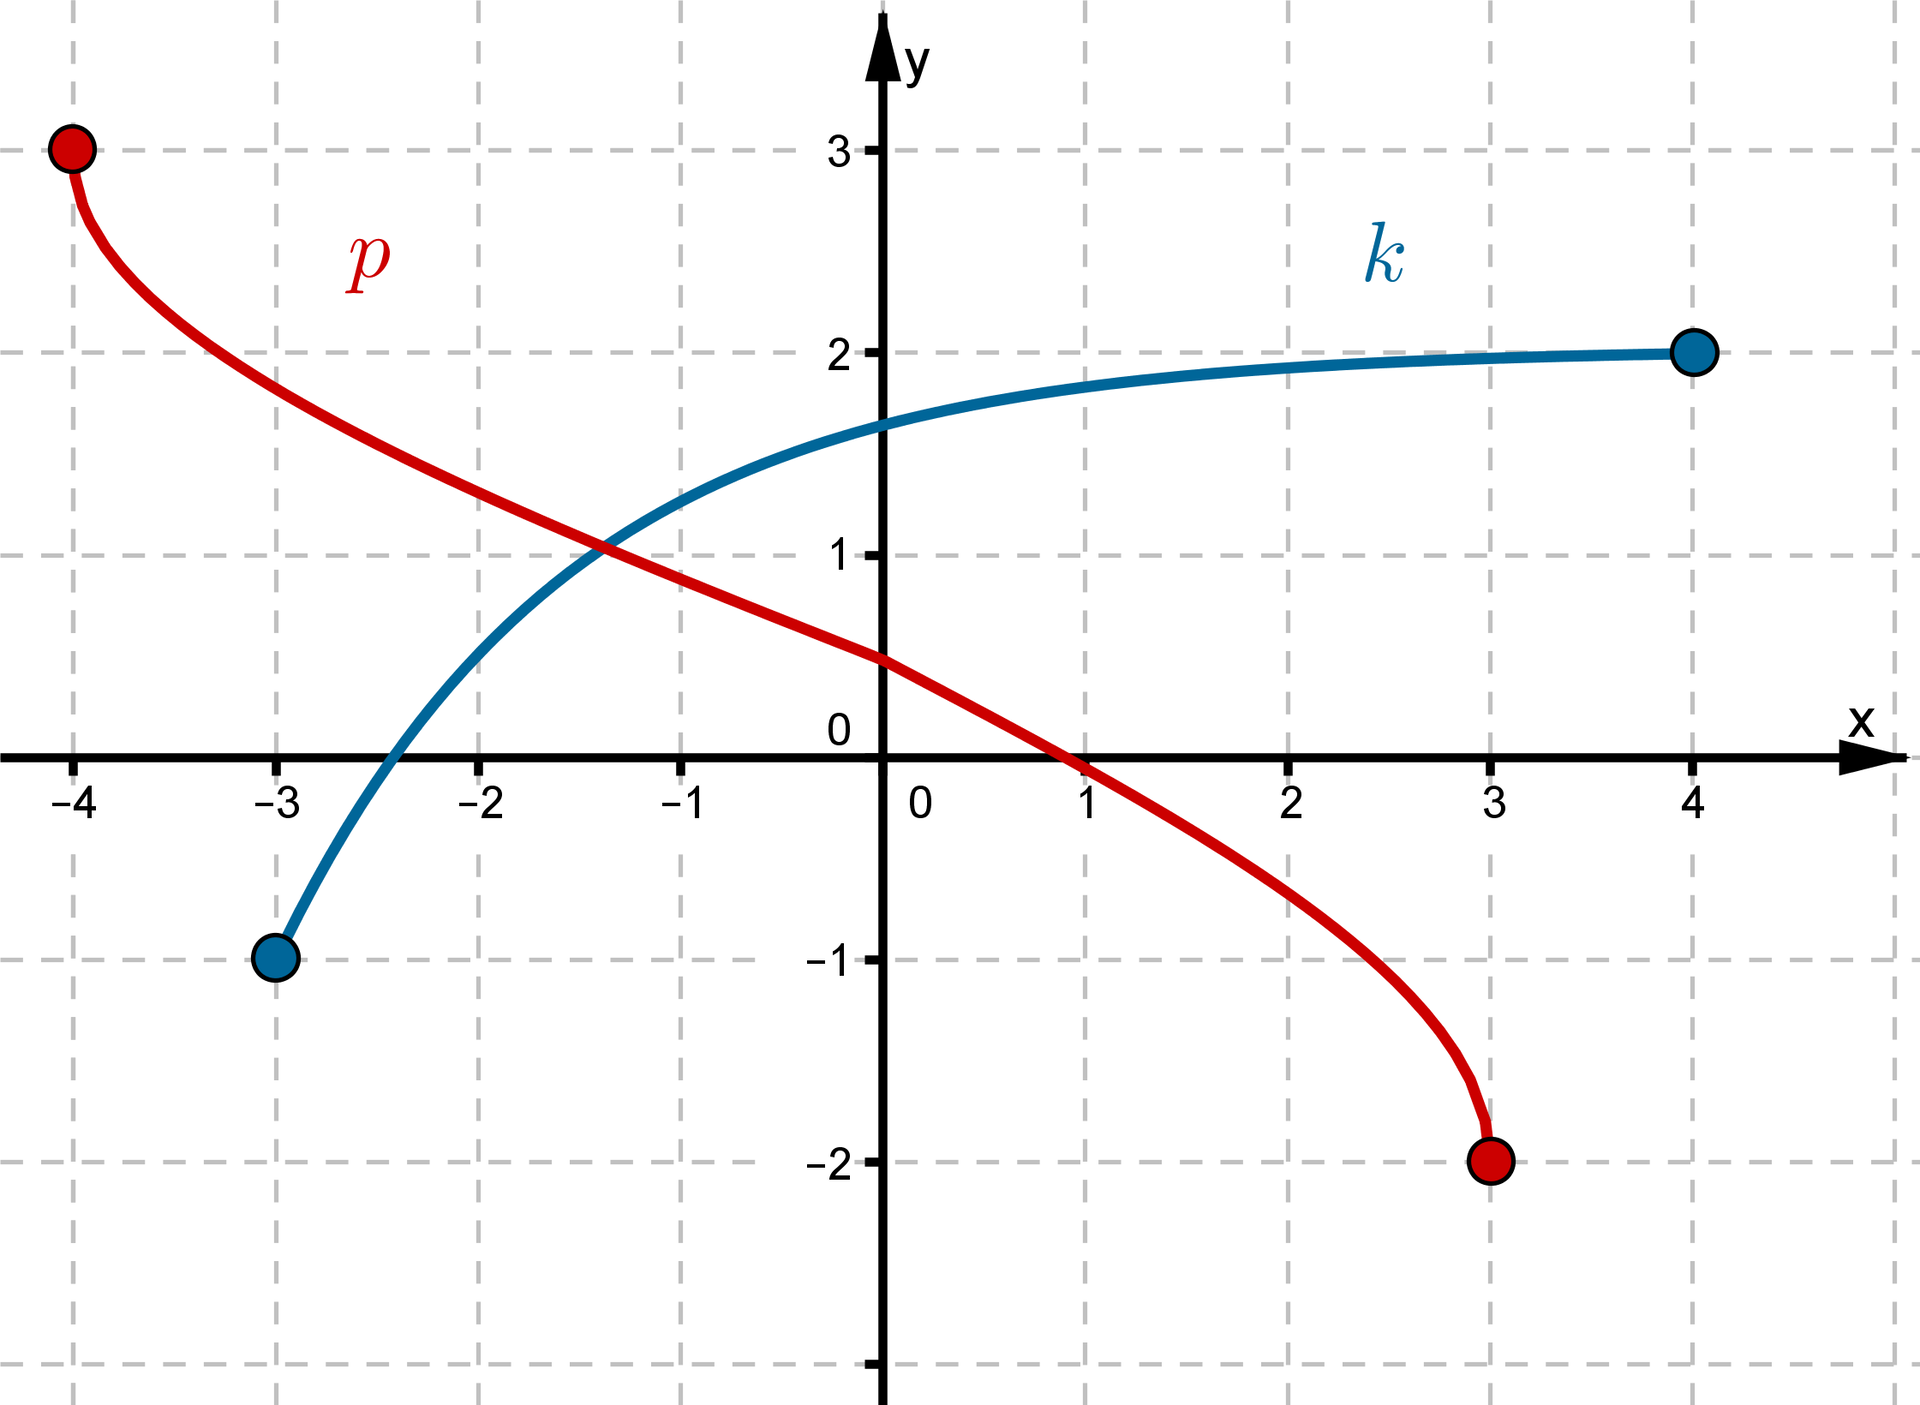 Wykres funkcji p w postaci krzywej leżącej w pierwszej, drugiej i czwartej ćwiartce układu współrzędnych i krzywej k leżącej w pierwszej, drugiej i trzeciej ćwiartce układu współrzędnych.